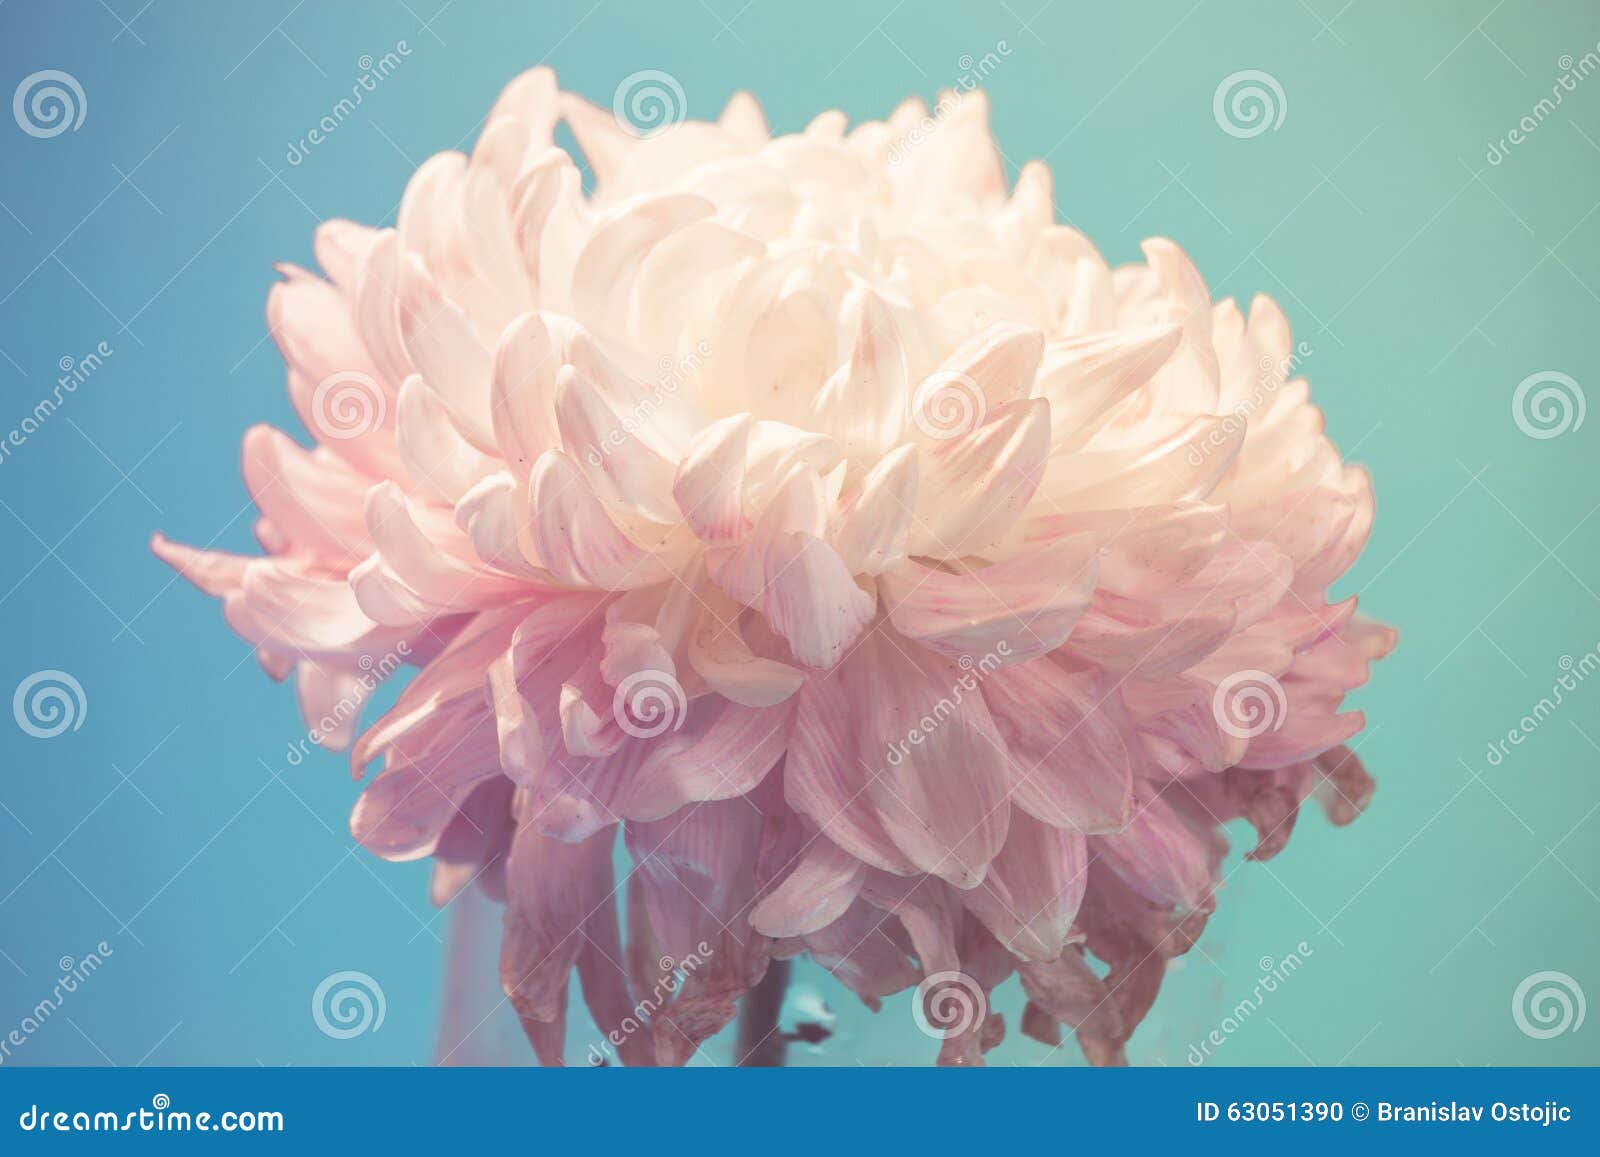 gentle flower of chrysanthemum